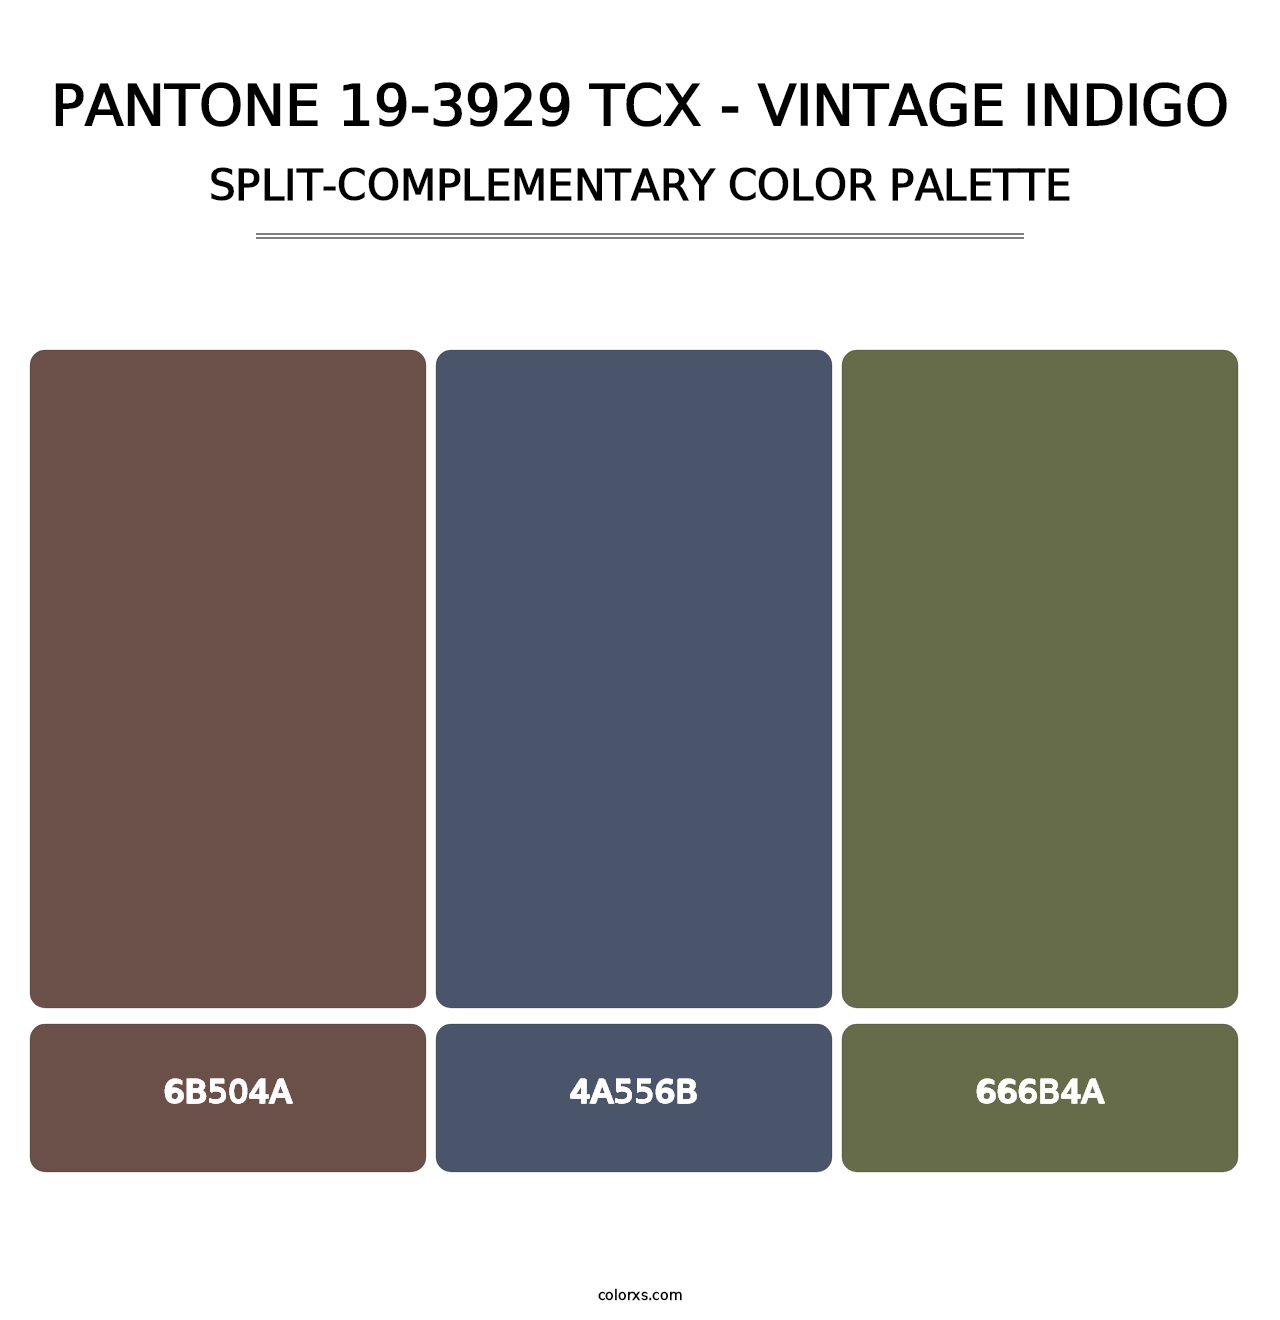 PANTONE 19-3929 TCX - Vintage Indigo - Split-Complementary Color Palette